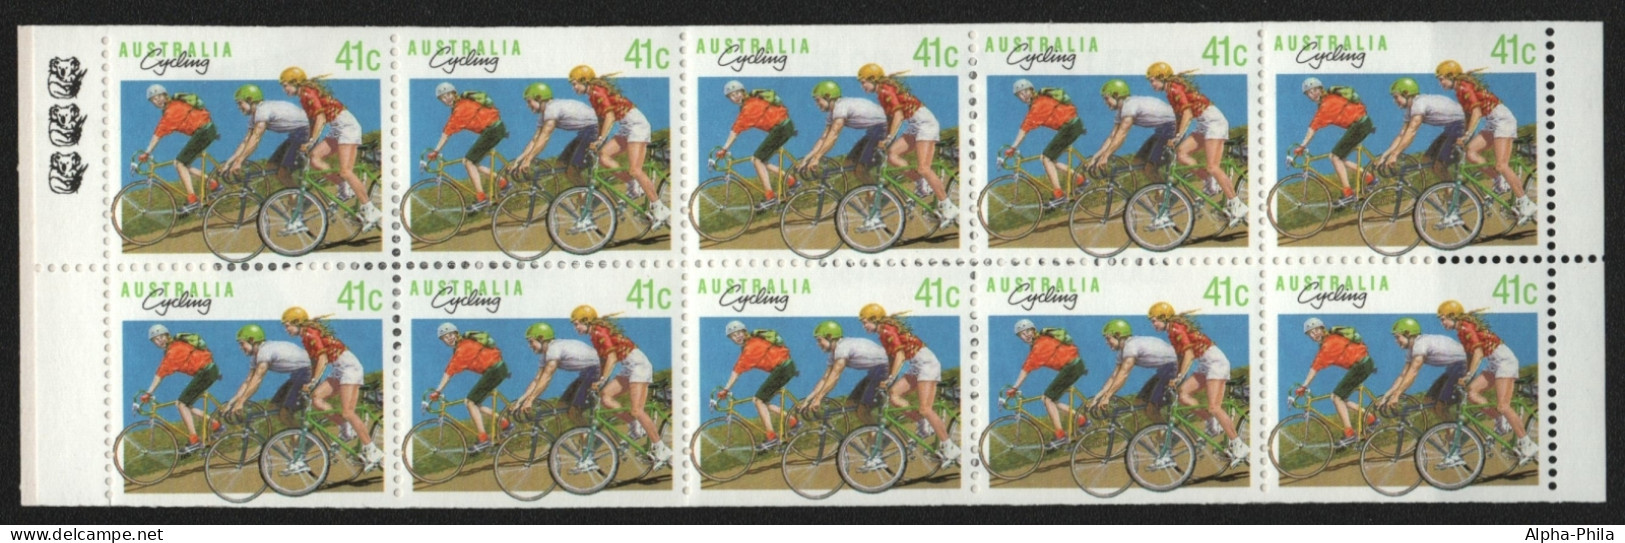 Australien 1989 - Mi-Nr. 1165 D ** - MNH - MH 0-63 - Radsport - Libretti